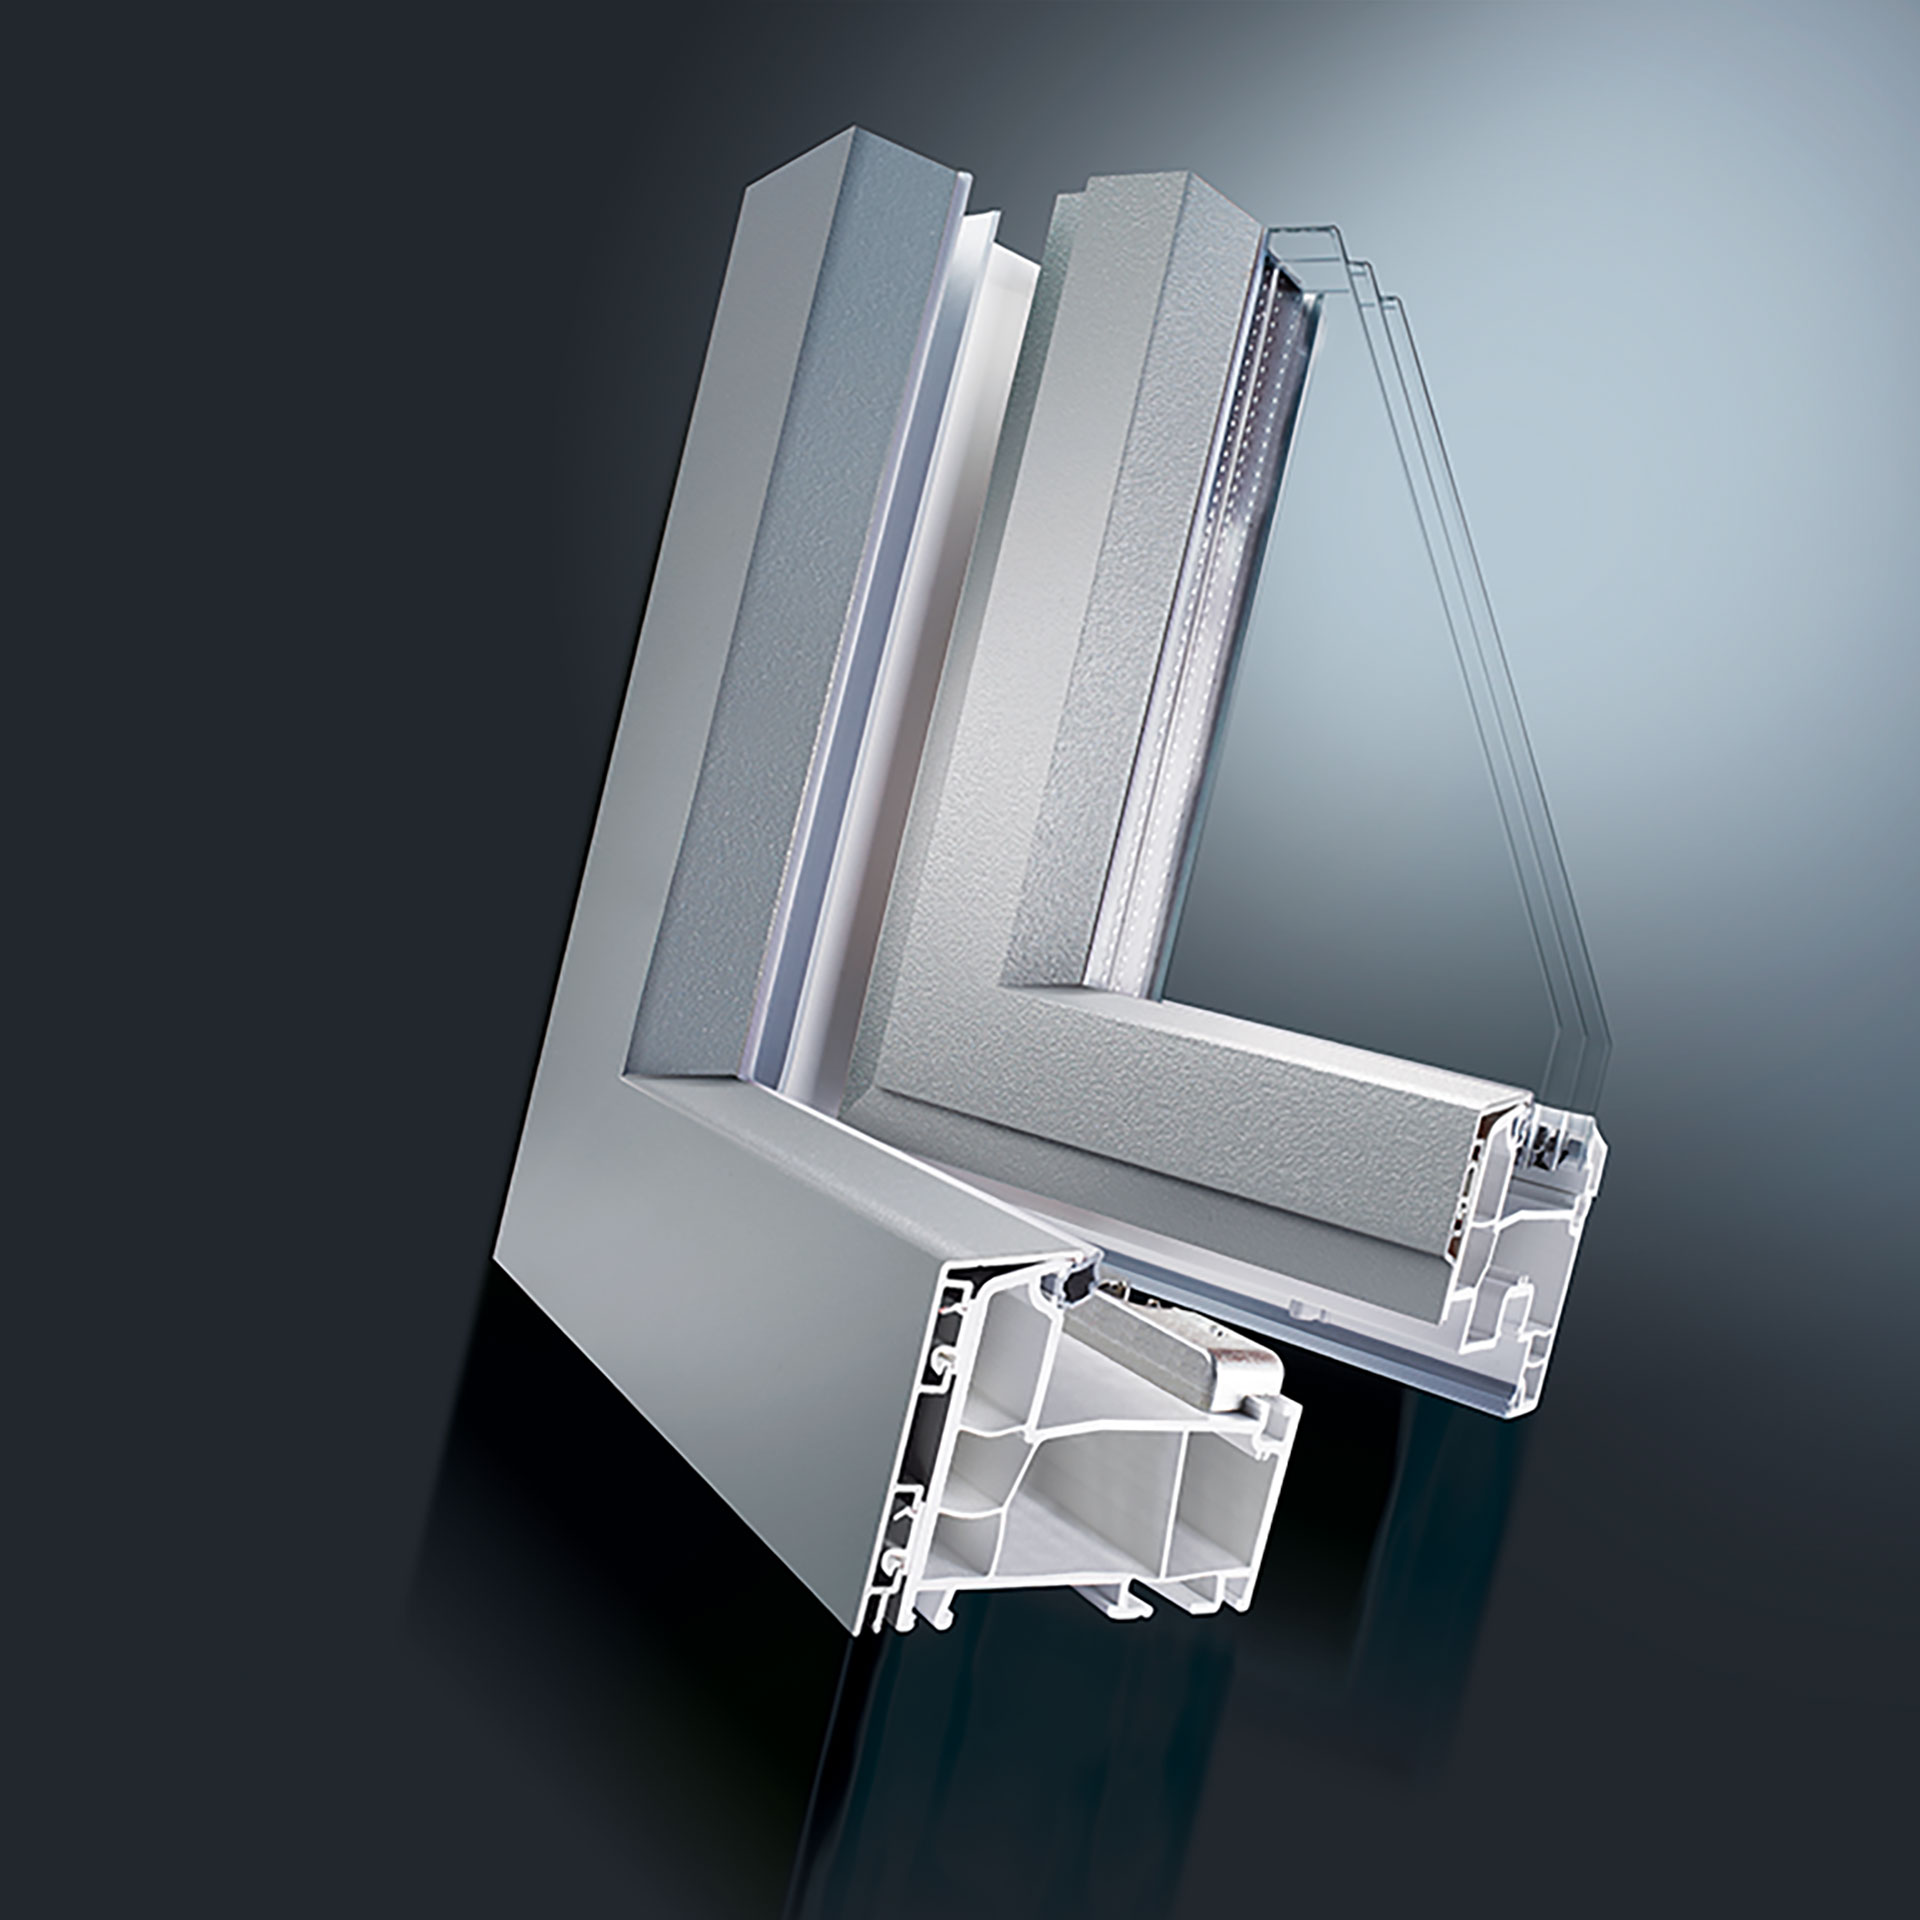 Beim GUTMANN DECCO - Kunststoff-Aluminium Fenster- & Tür-System wird auf die Außenseite der Kunststofffenster eine robuste Aluminiumschale montiert. Diese schützt Ihr Fenster und ist in viele Farben erhältlich. Die Systemeigenschaften des verwendeten 